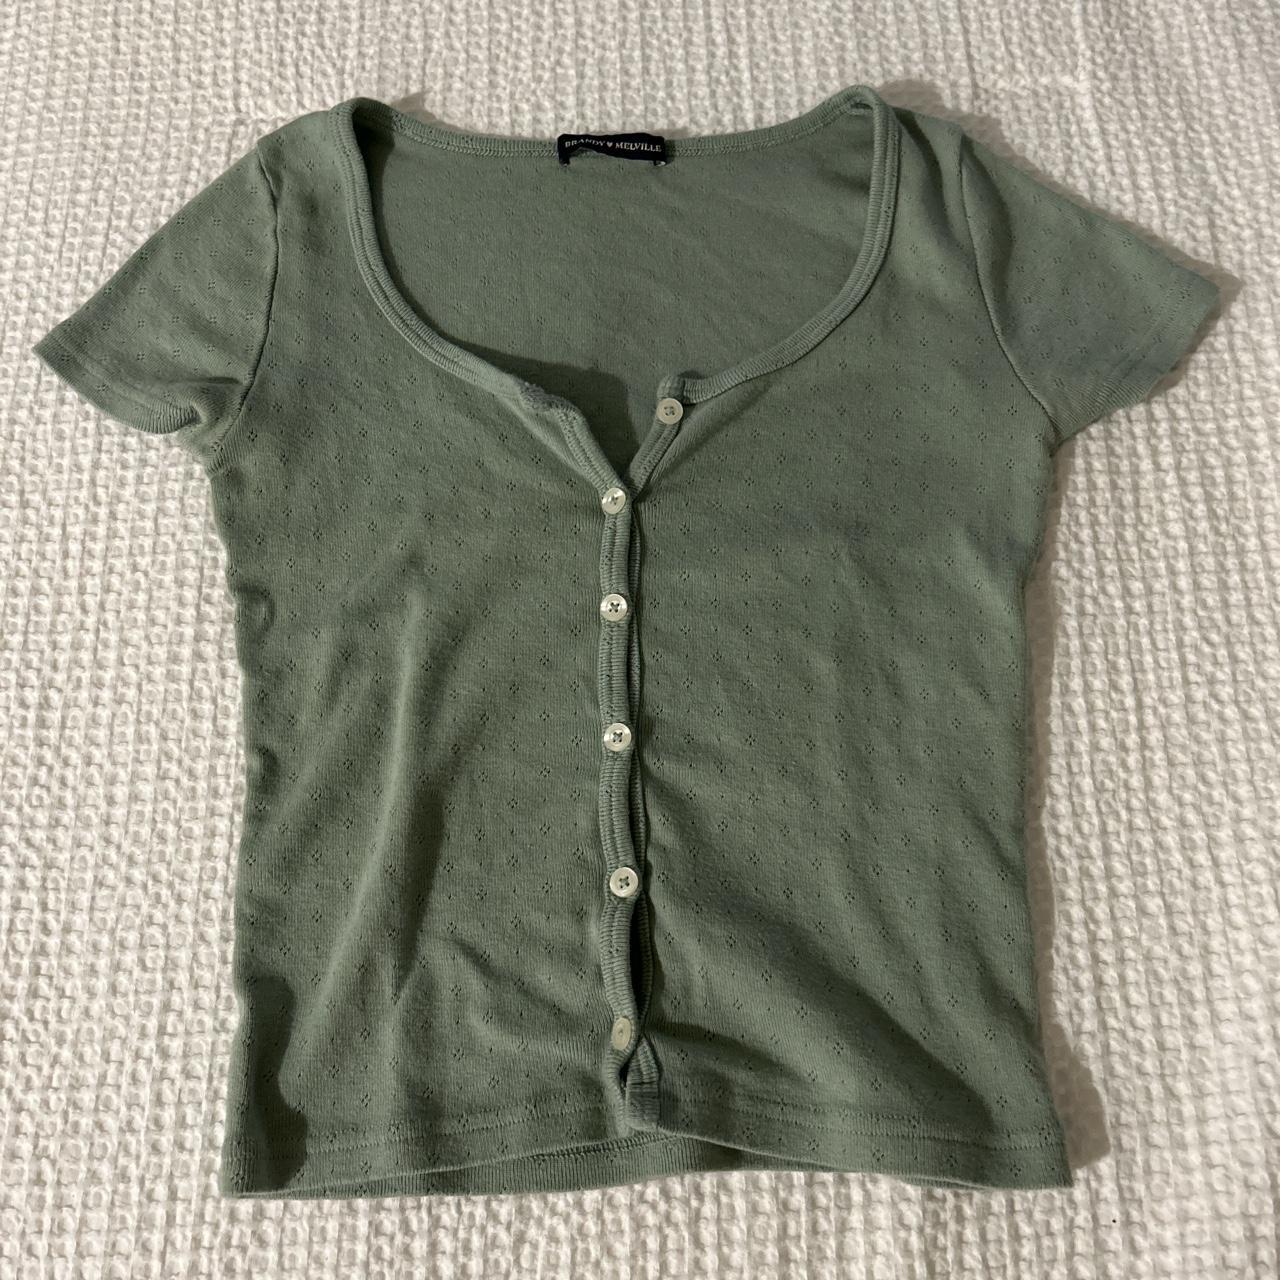 Brandy Melville Women's Green Shirt